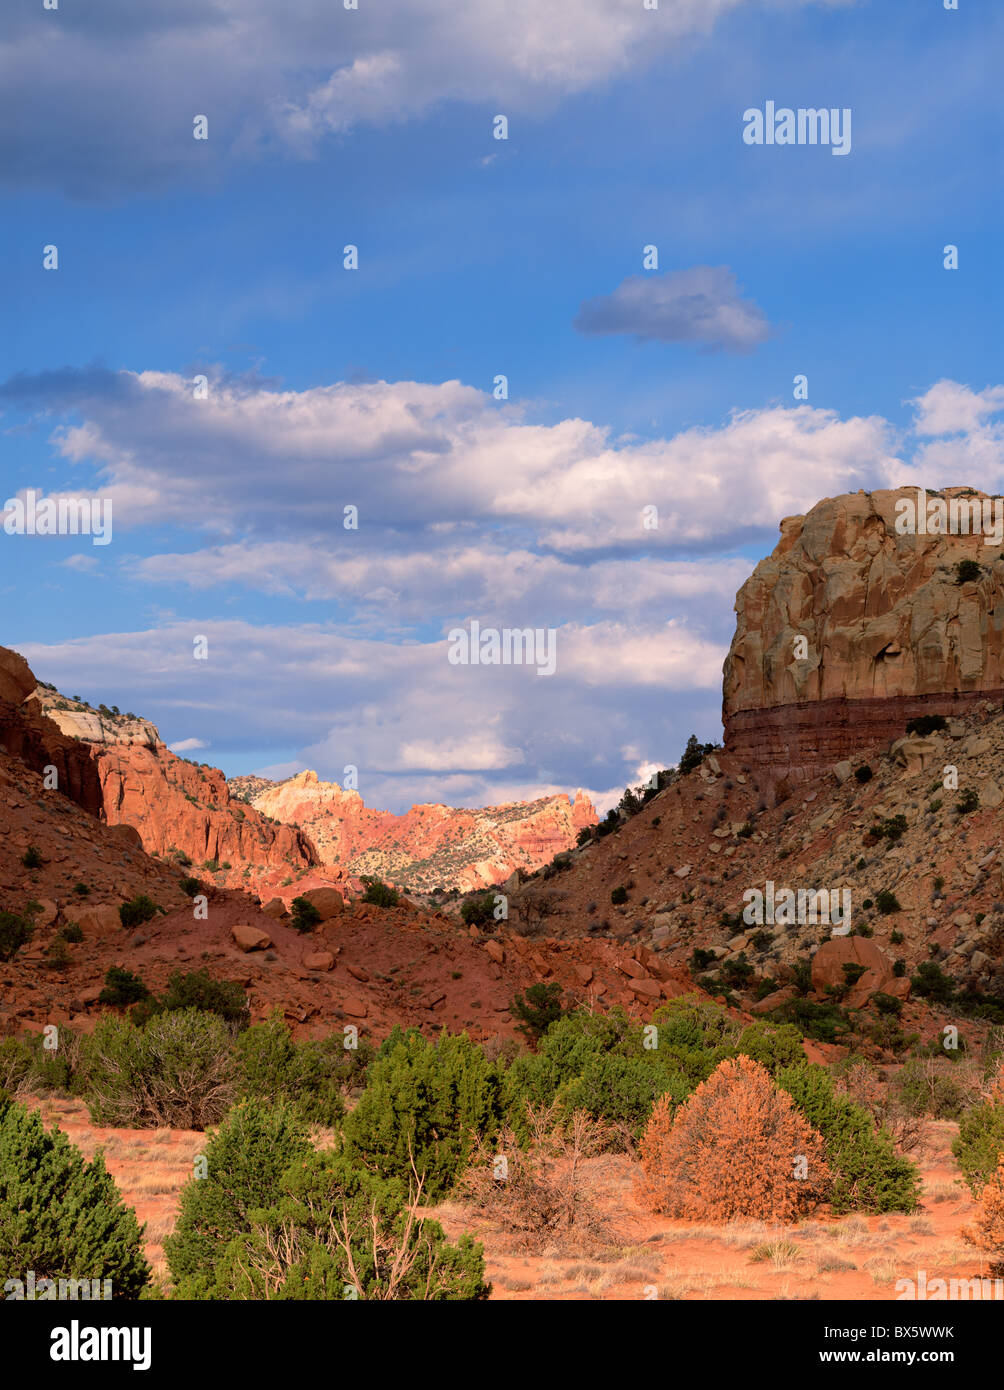 Le nord du désert du Nouveau Mexique canyon aux hautes falaises de couleur  rouge, orange et crème Photo Stock - Alamy